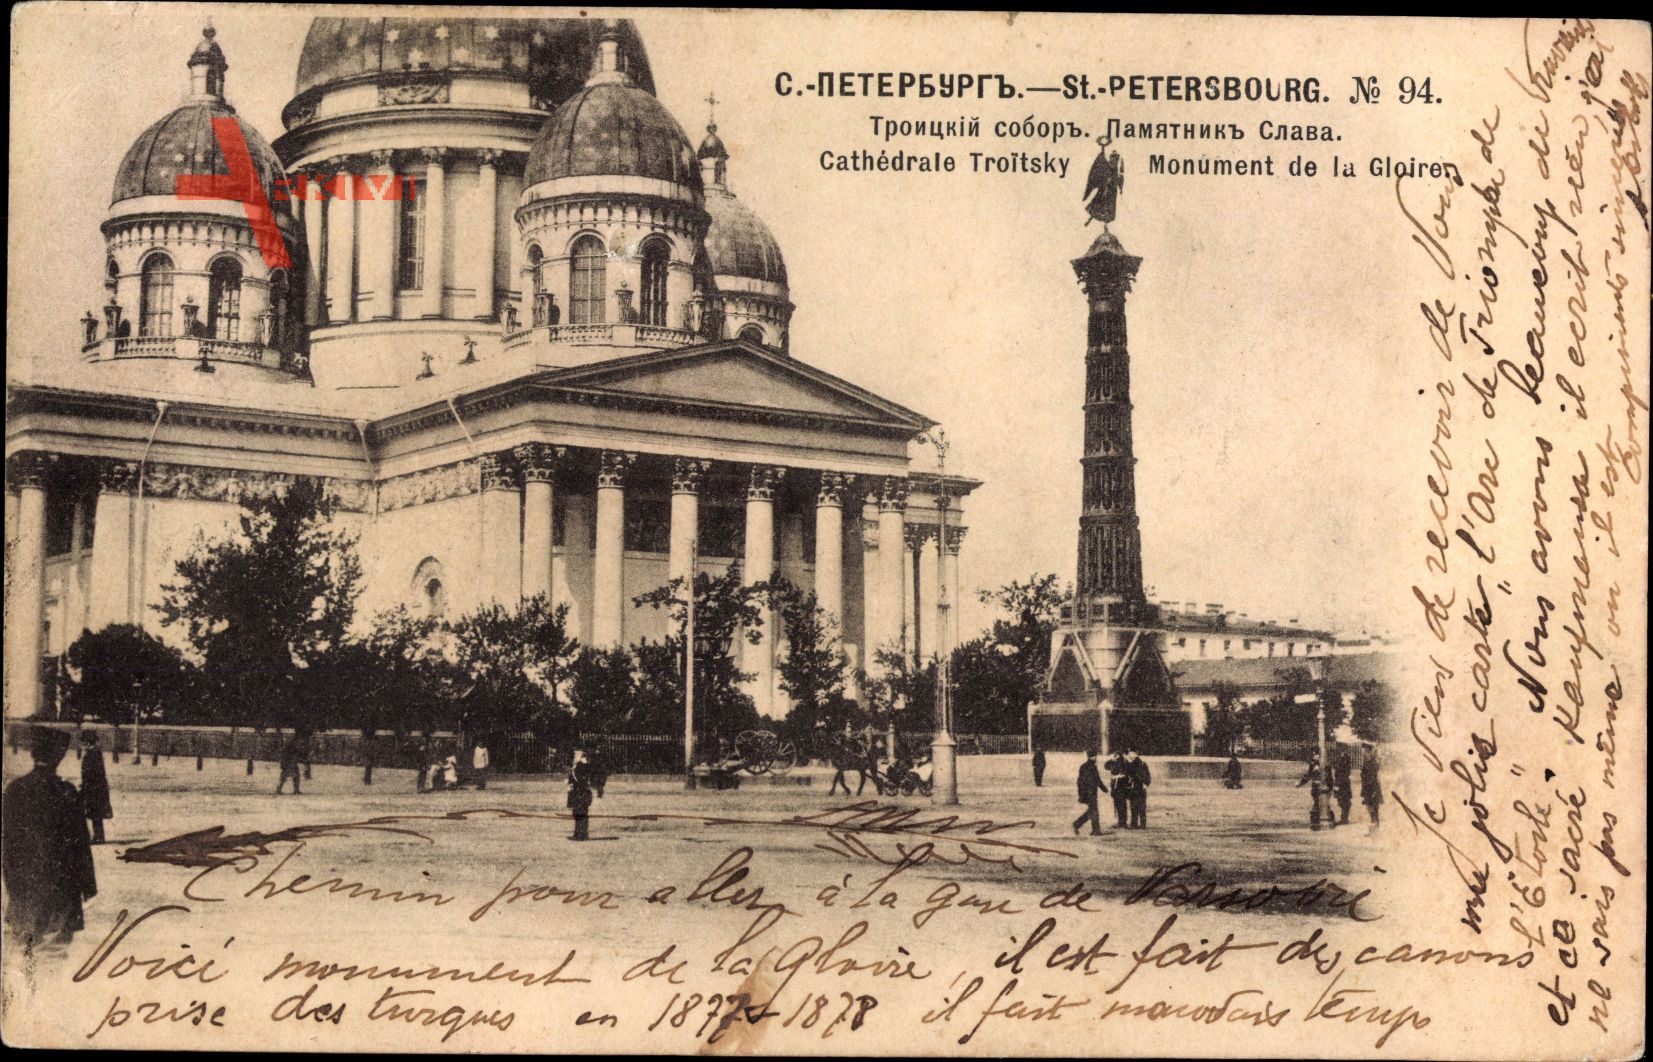 Sankt Petersburg Russland, Monument de la Gloiren, Cathedrale Troitsky